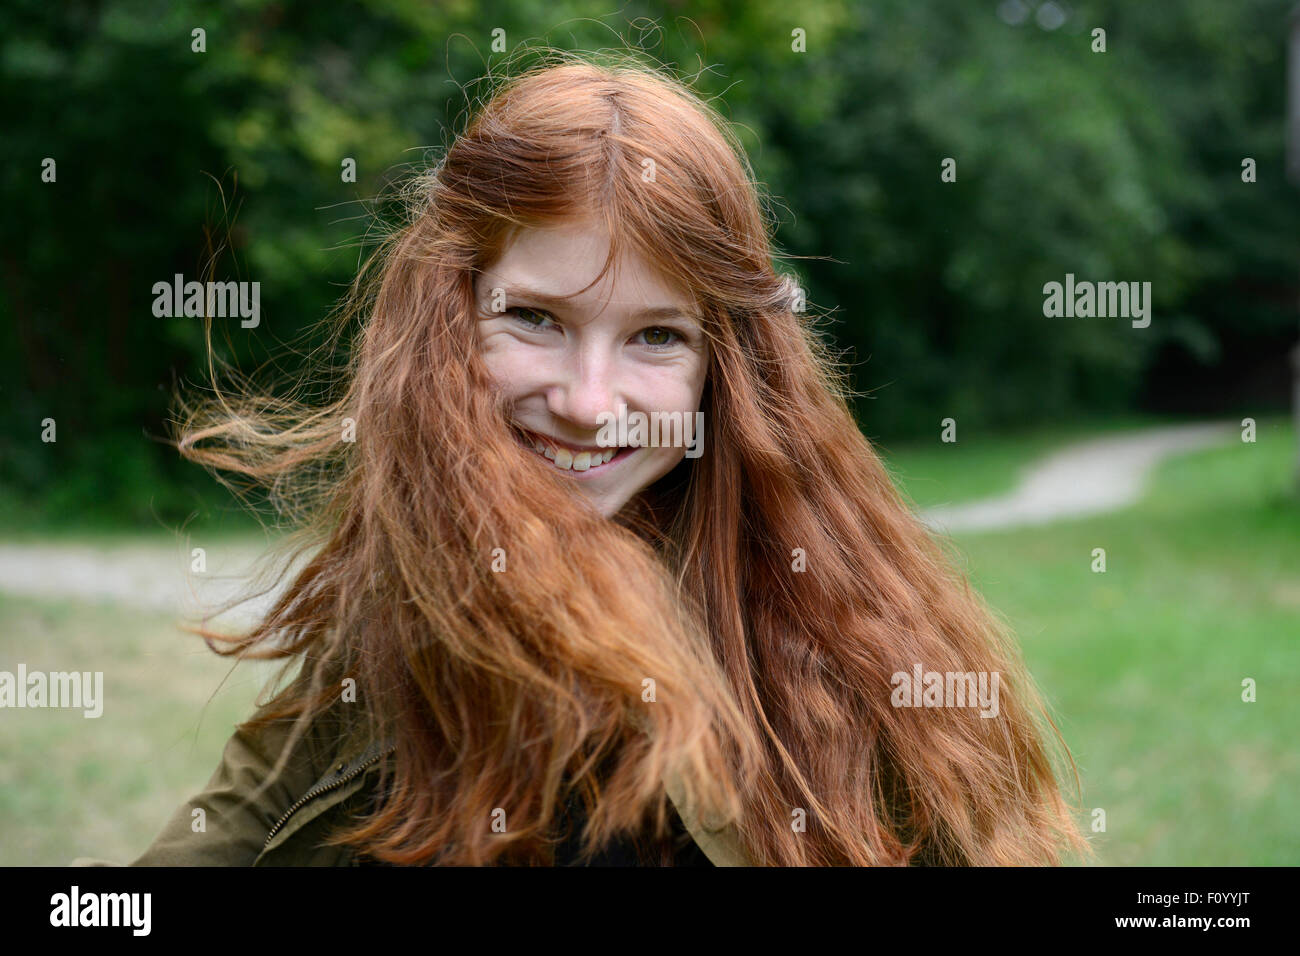 Adolescente avec de longs cheveux rouges, effleurant ses cheveux, Allemagne Banque D'Images